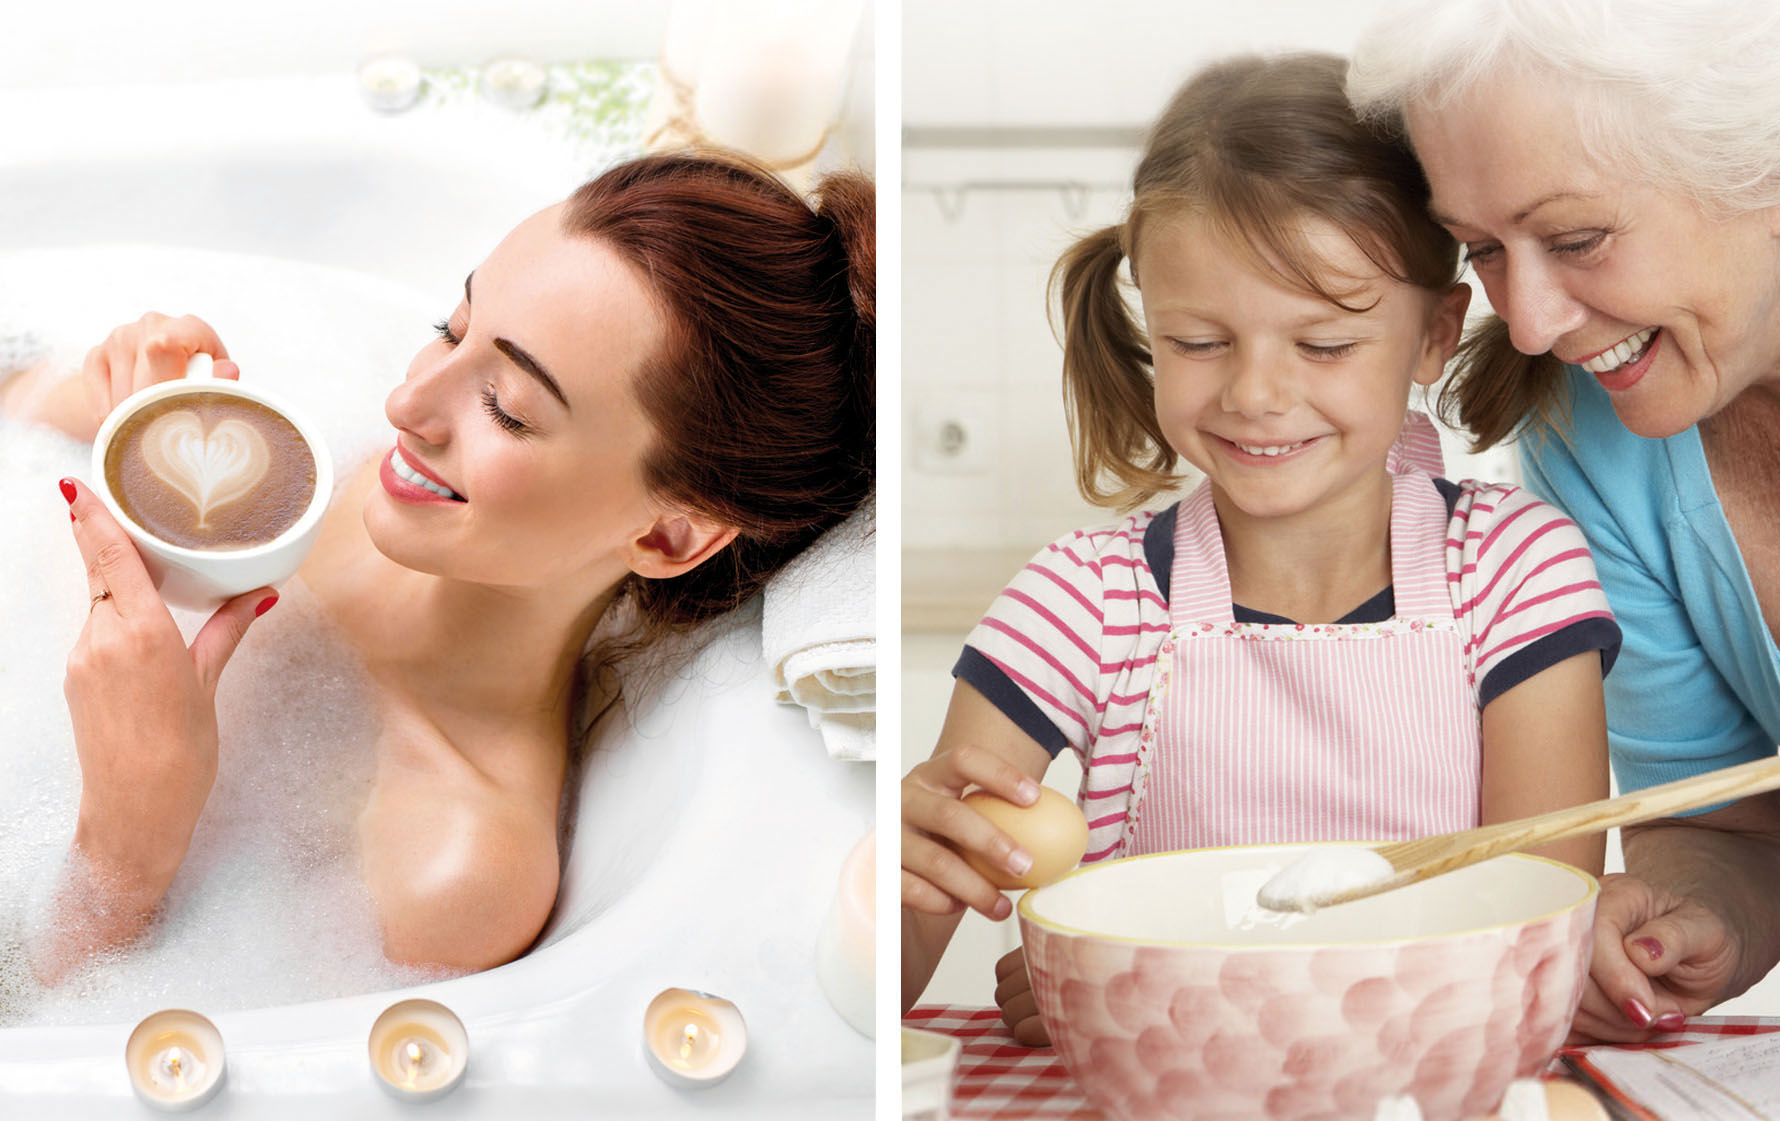 Bild ist in zwei Hälften geteilt. Auf der linken Seite eine Frau die Eine Tasse Kaffee in der Badewanne trinkt. Auf der rechten Seite eine Oma die mit ihrer Enkelin backt. Unterschrift Purux Natron  